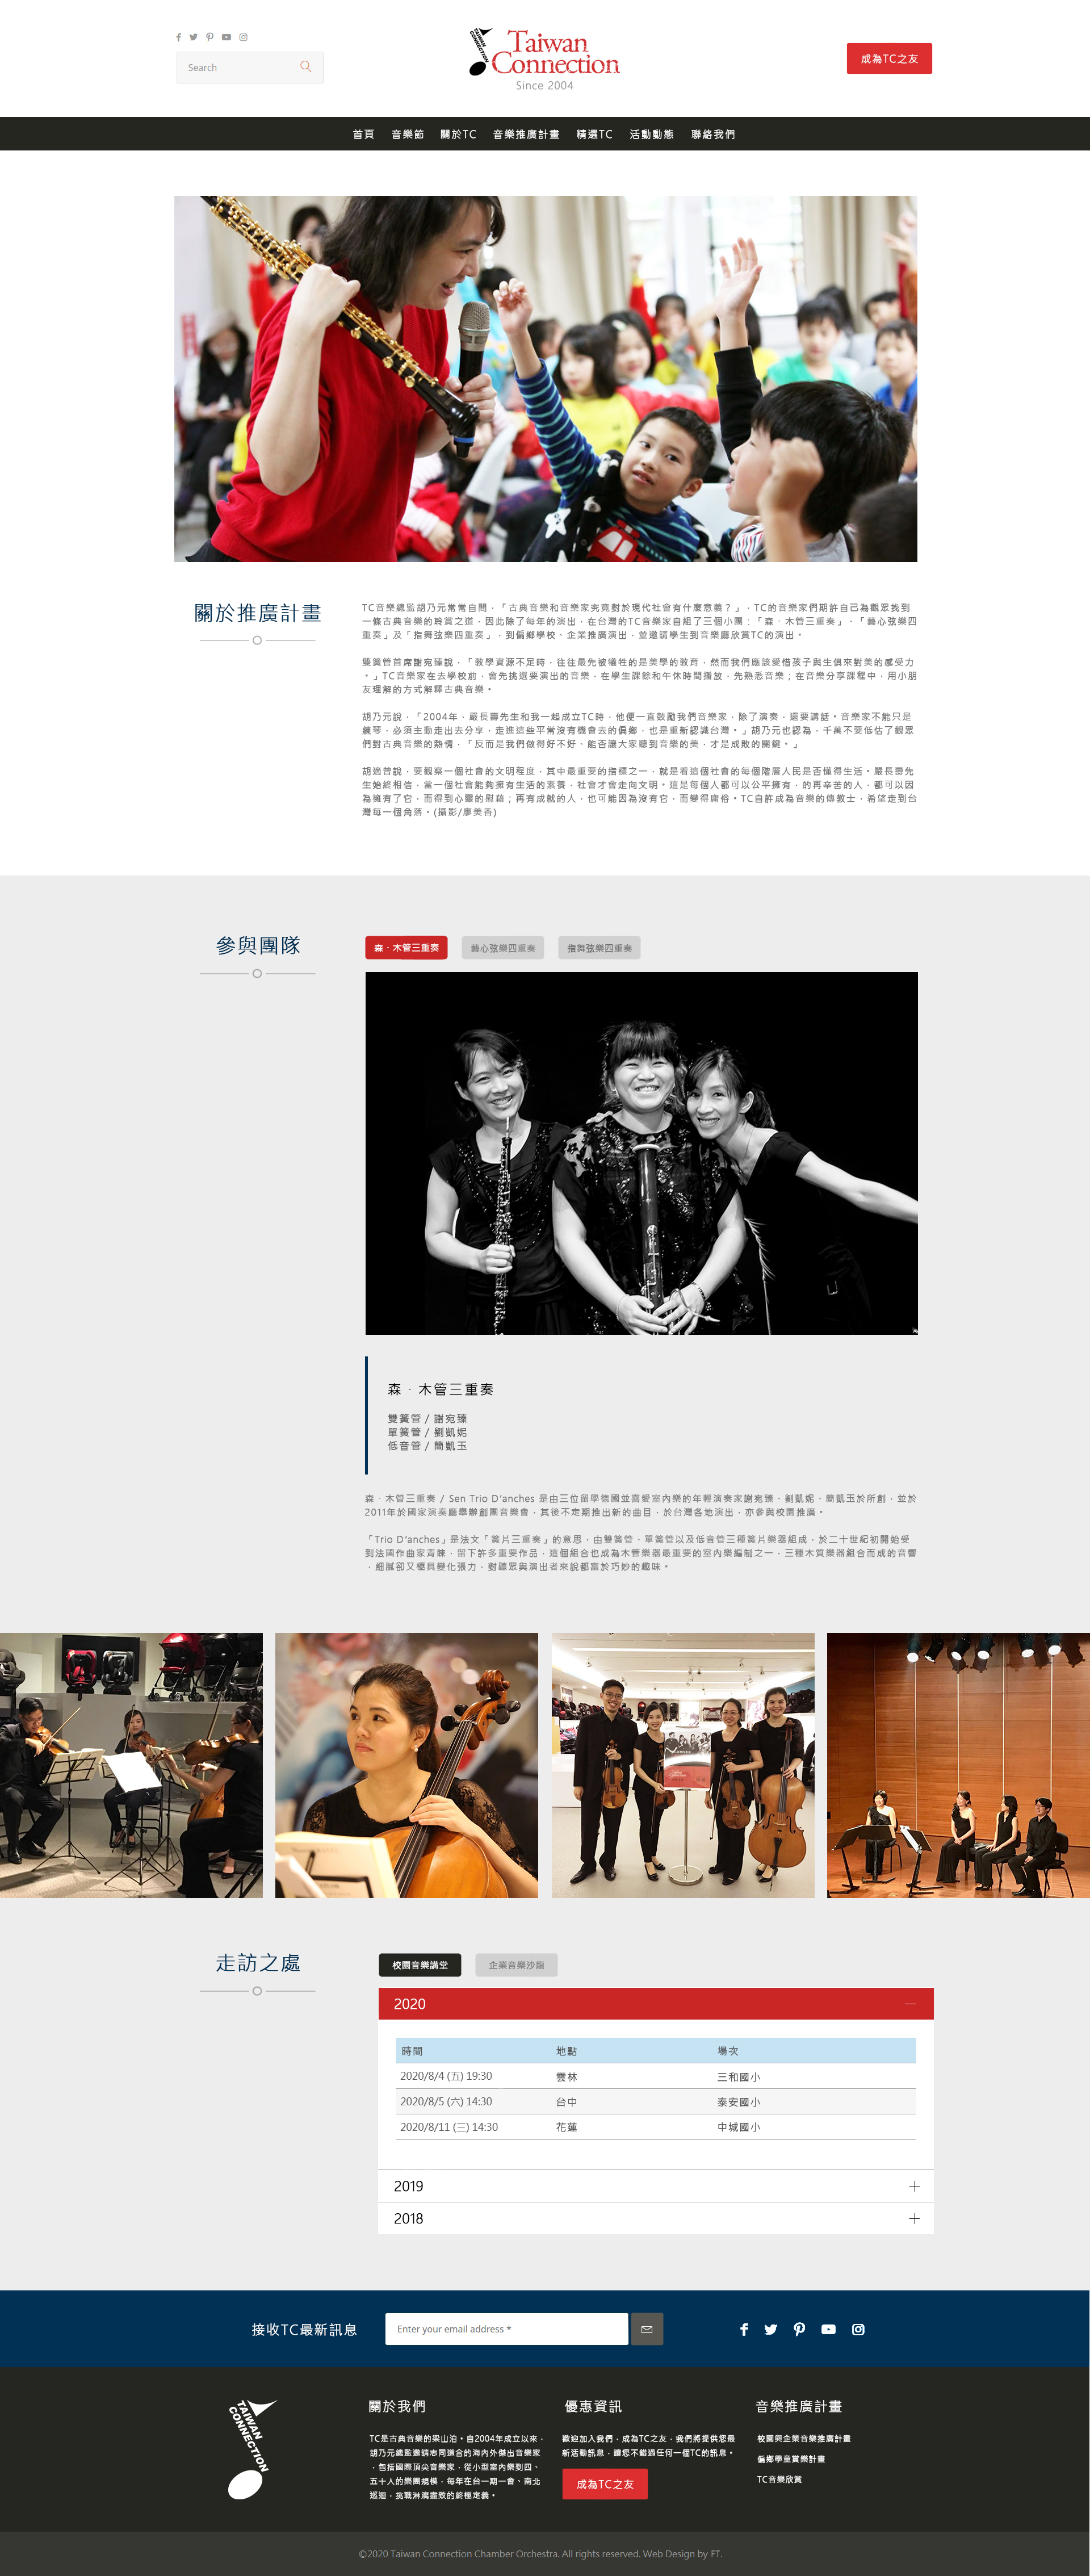 Taiwan Connection,TC,台灣TC,台灣TC室內樂團,嚴長壽,胡乃元,古典樂團網頁設計,網站設計,web design